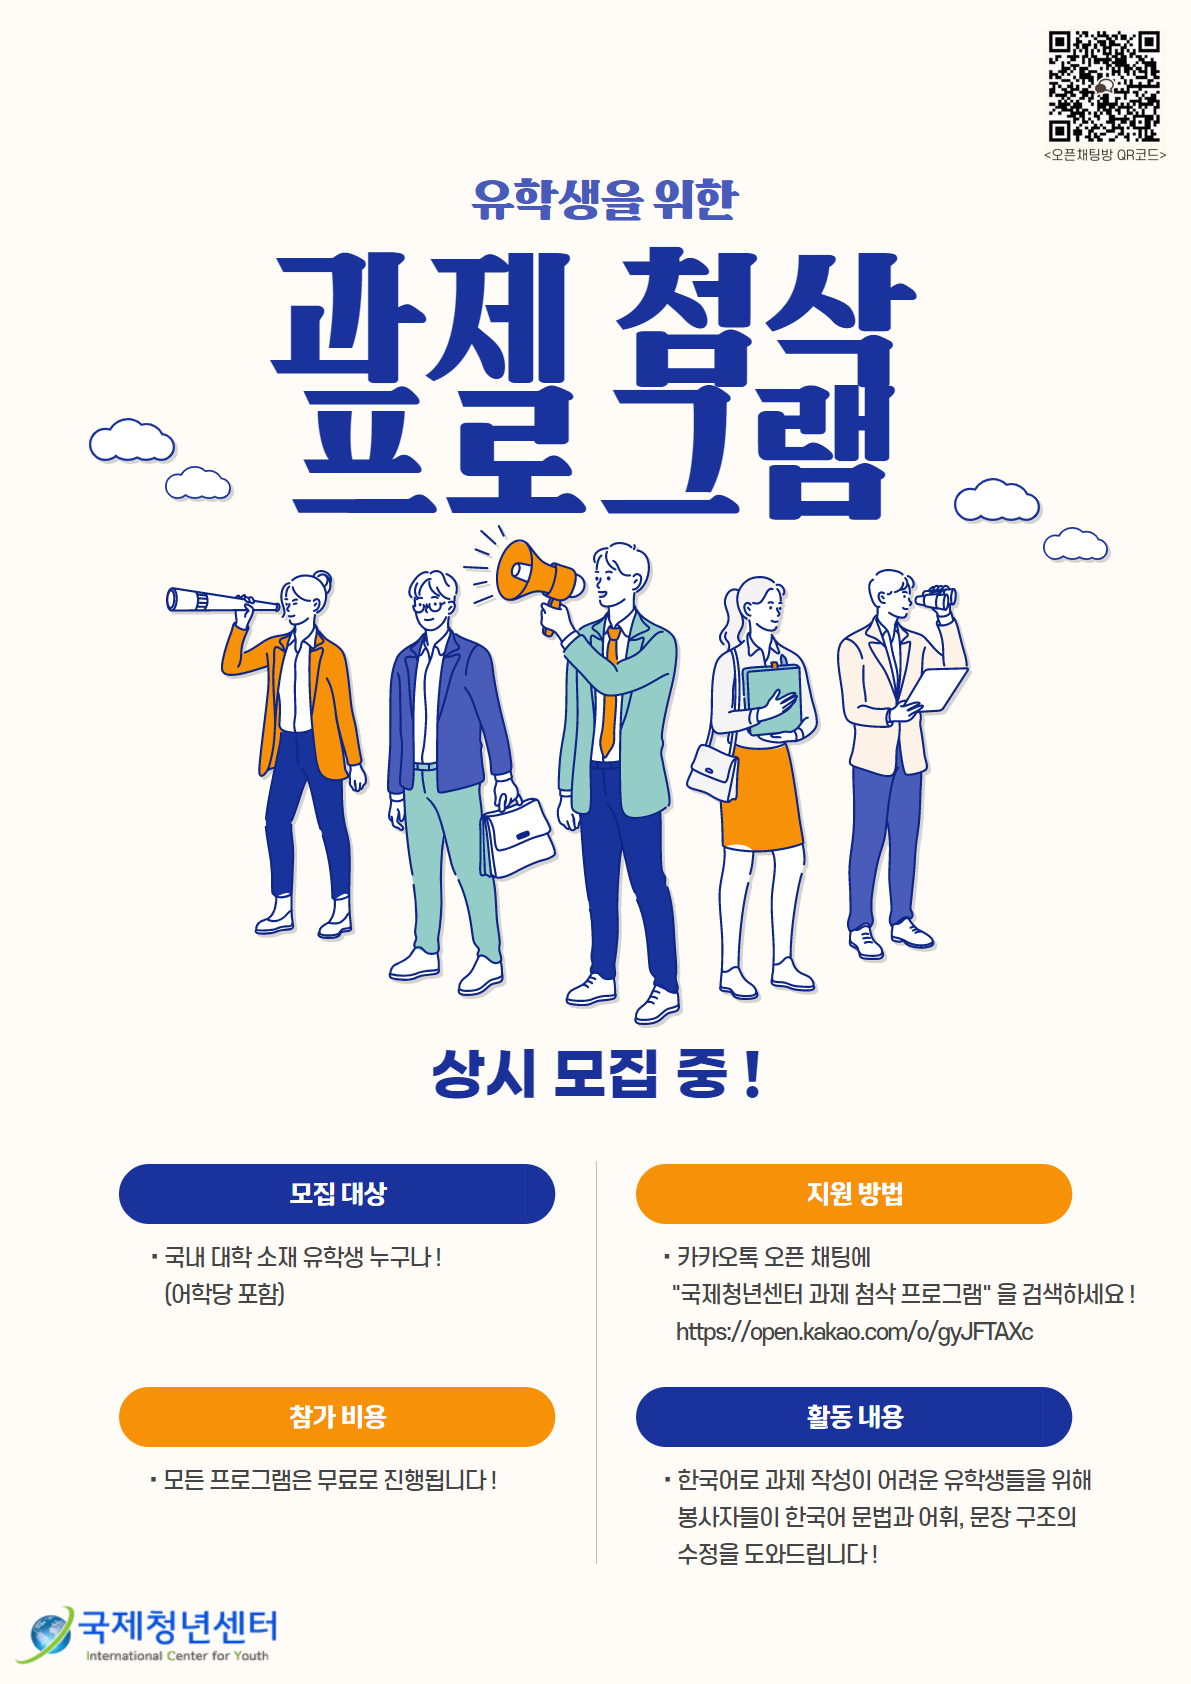 한국어 과제 첨삭 프로그램(Korean assignment correction program)